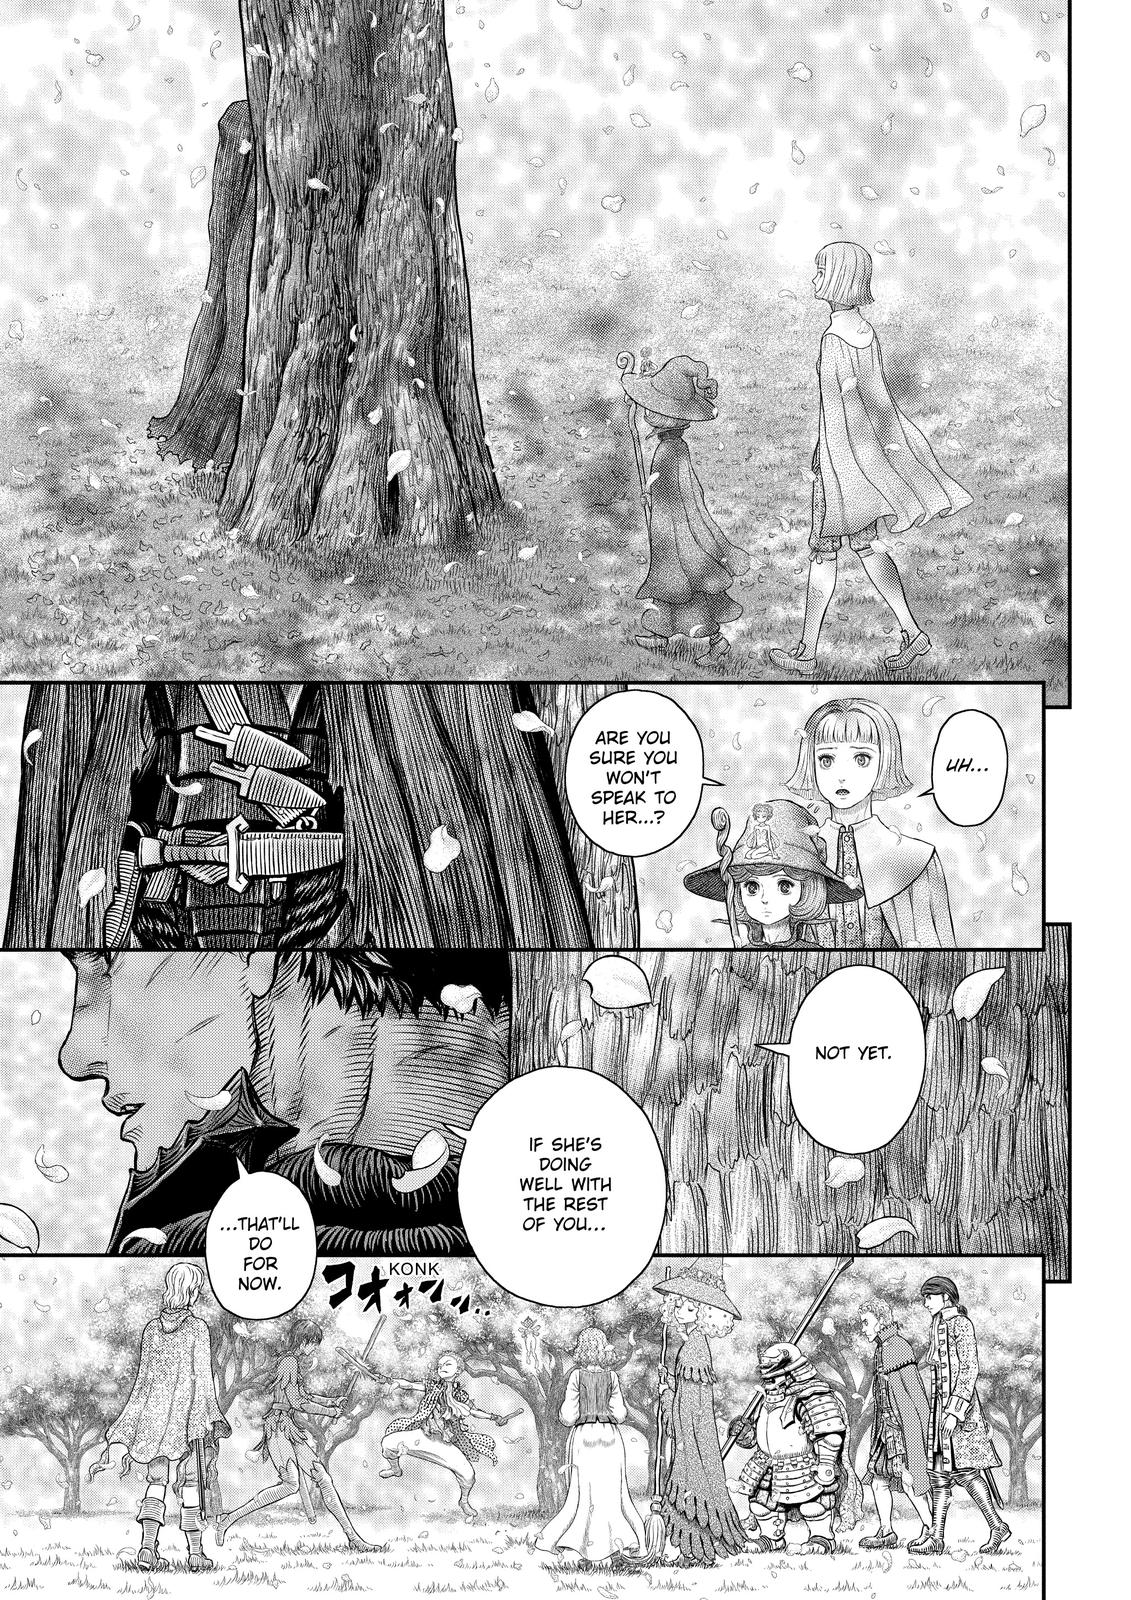 Berserk Manga Chapter 359 image 13